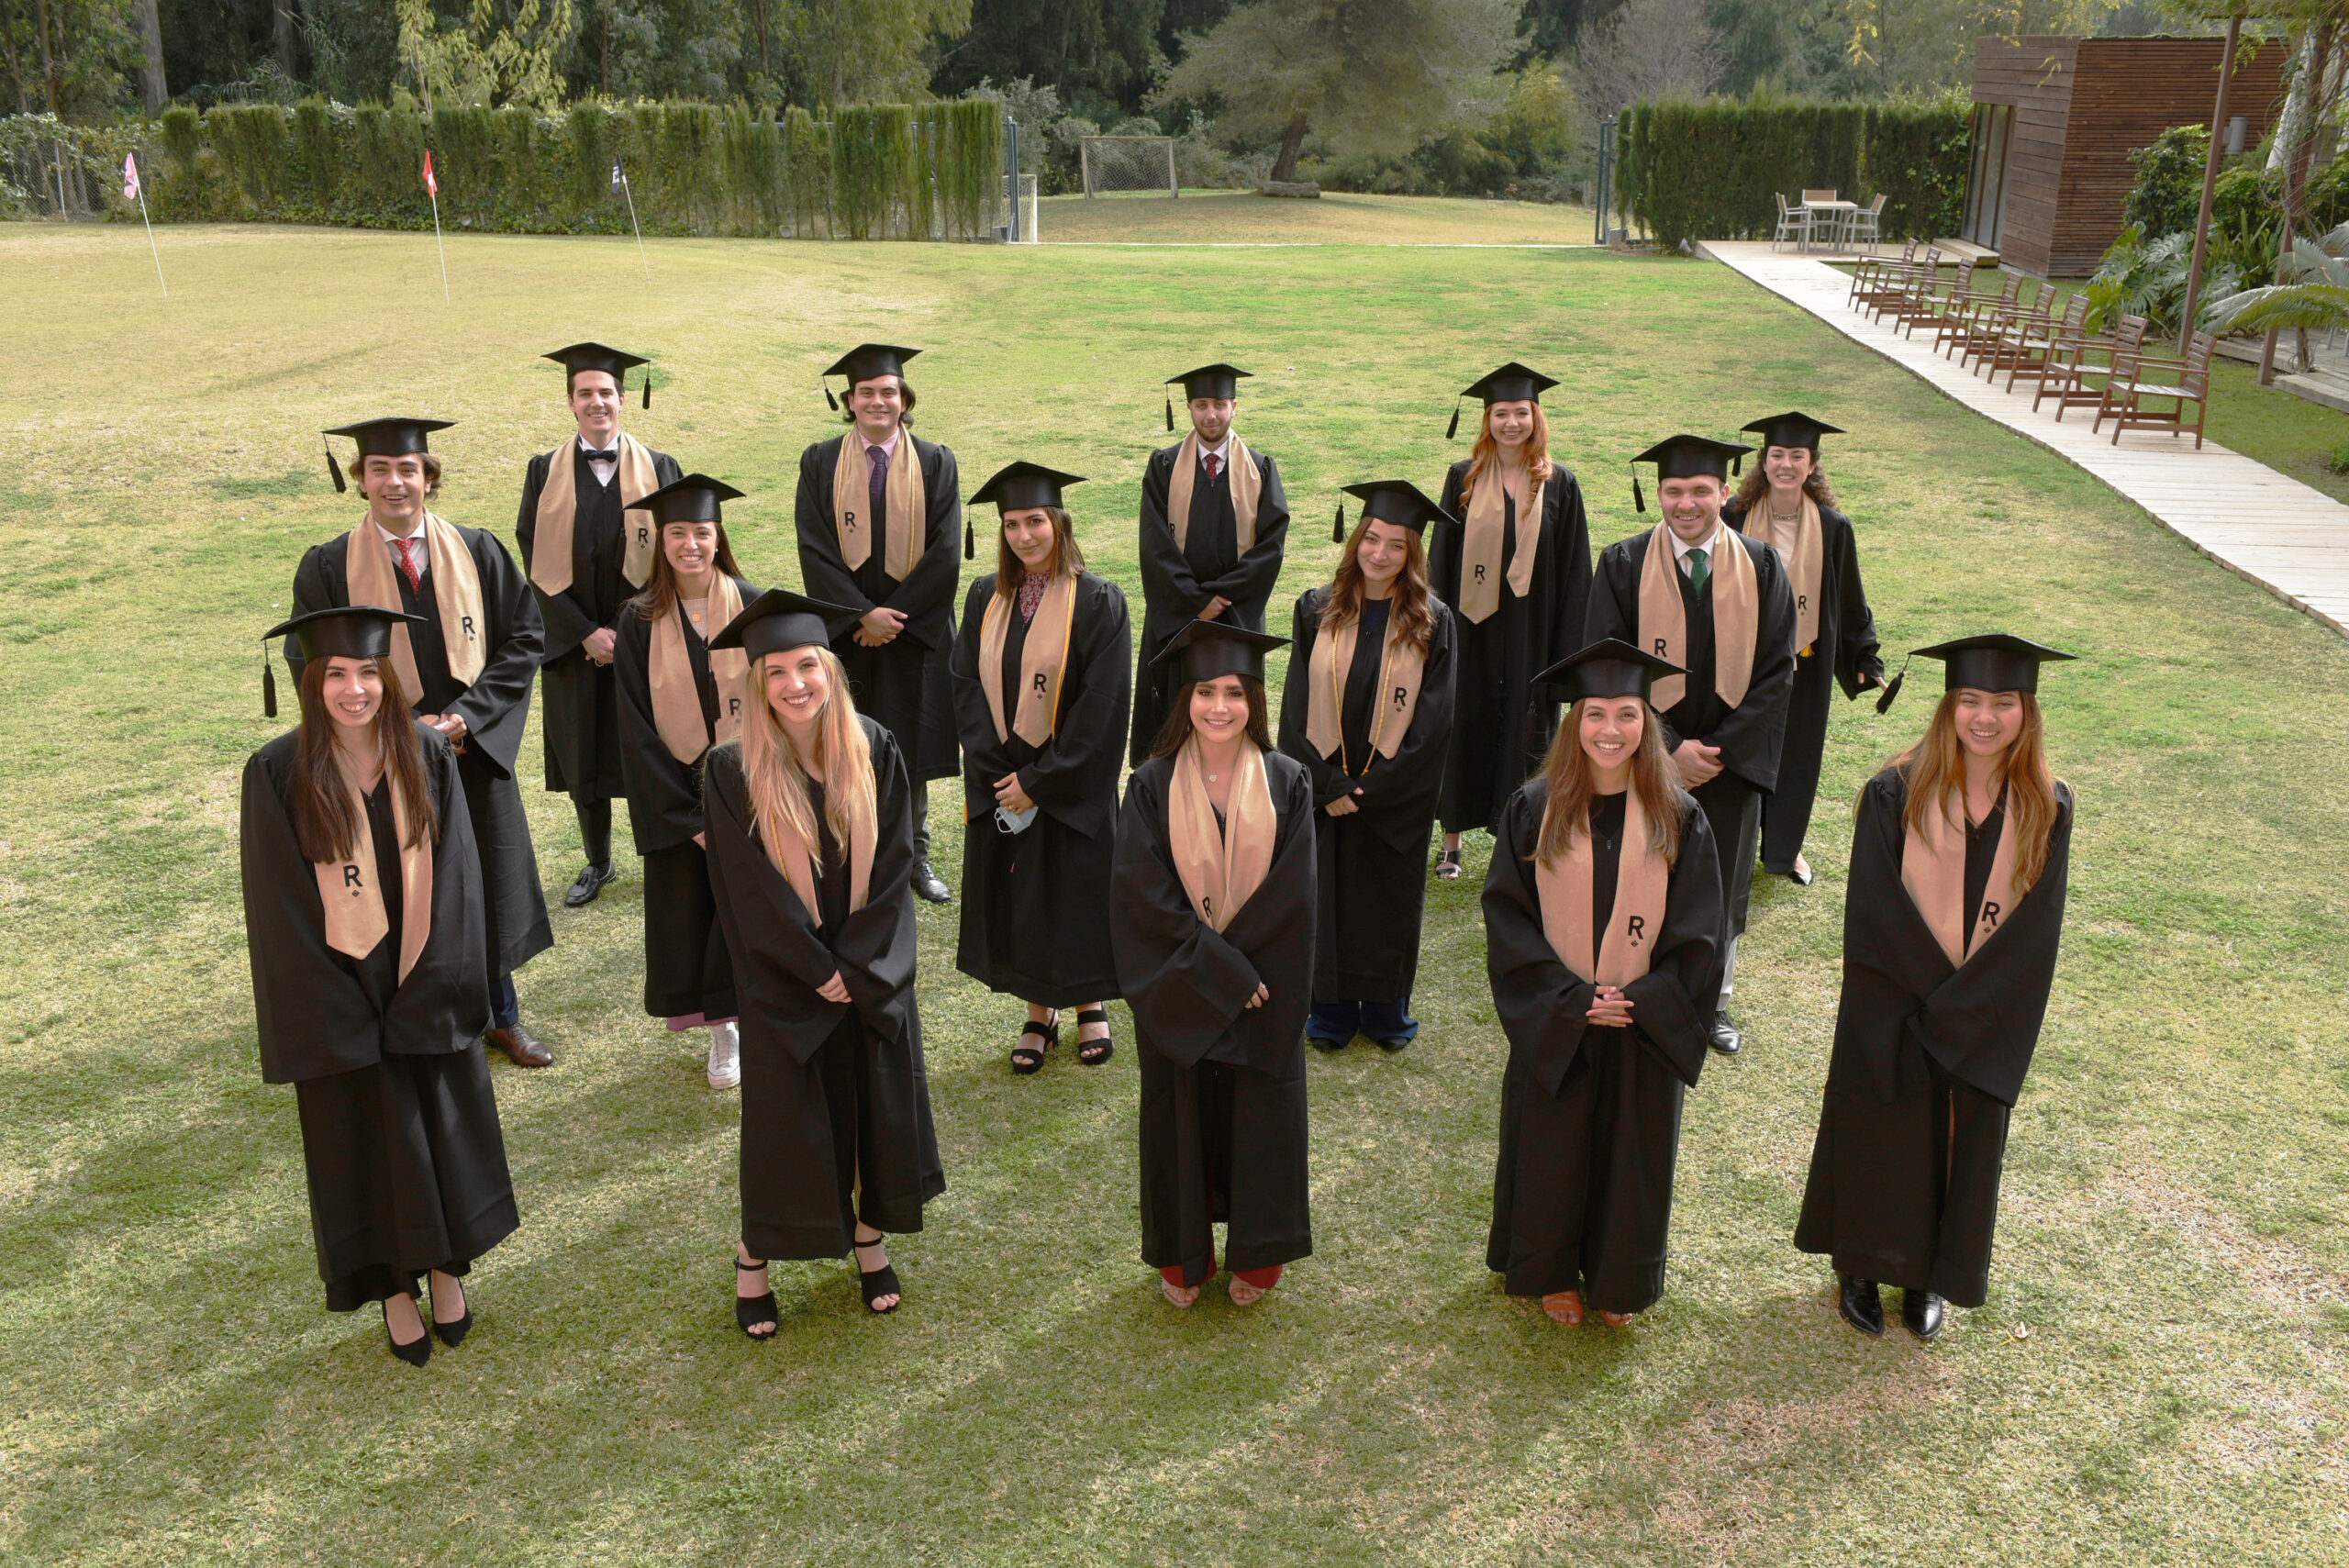 Les Roches Marbella gradúa a su nueva promoción 195 alumnos de 47 países